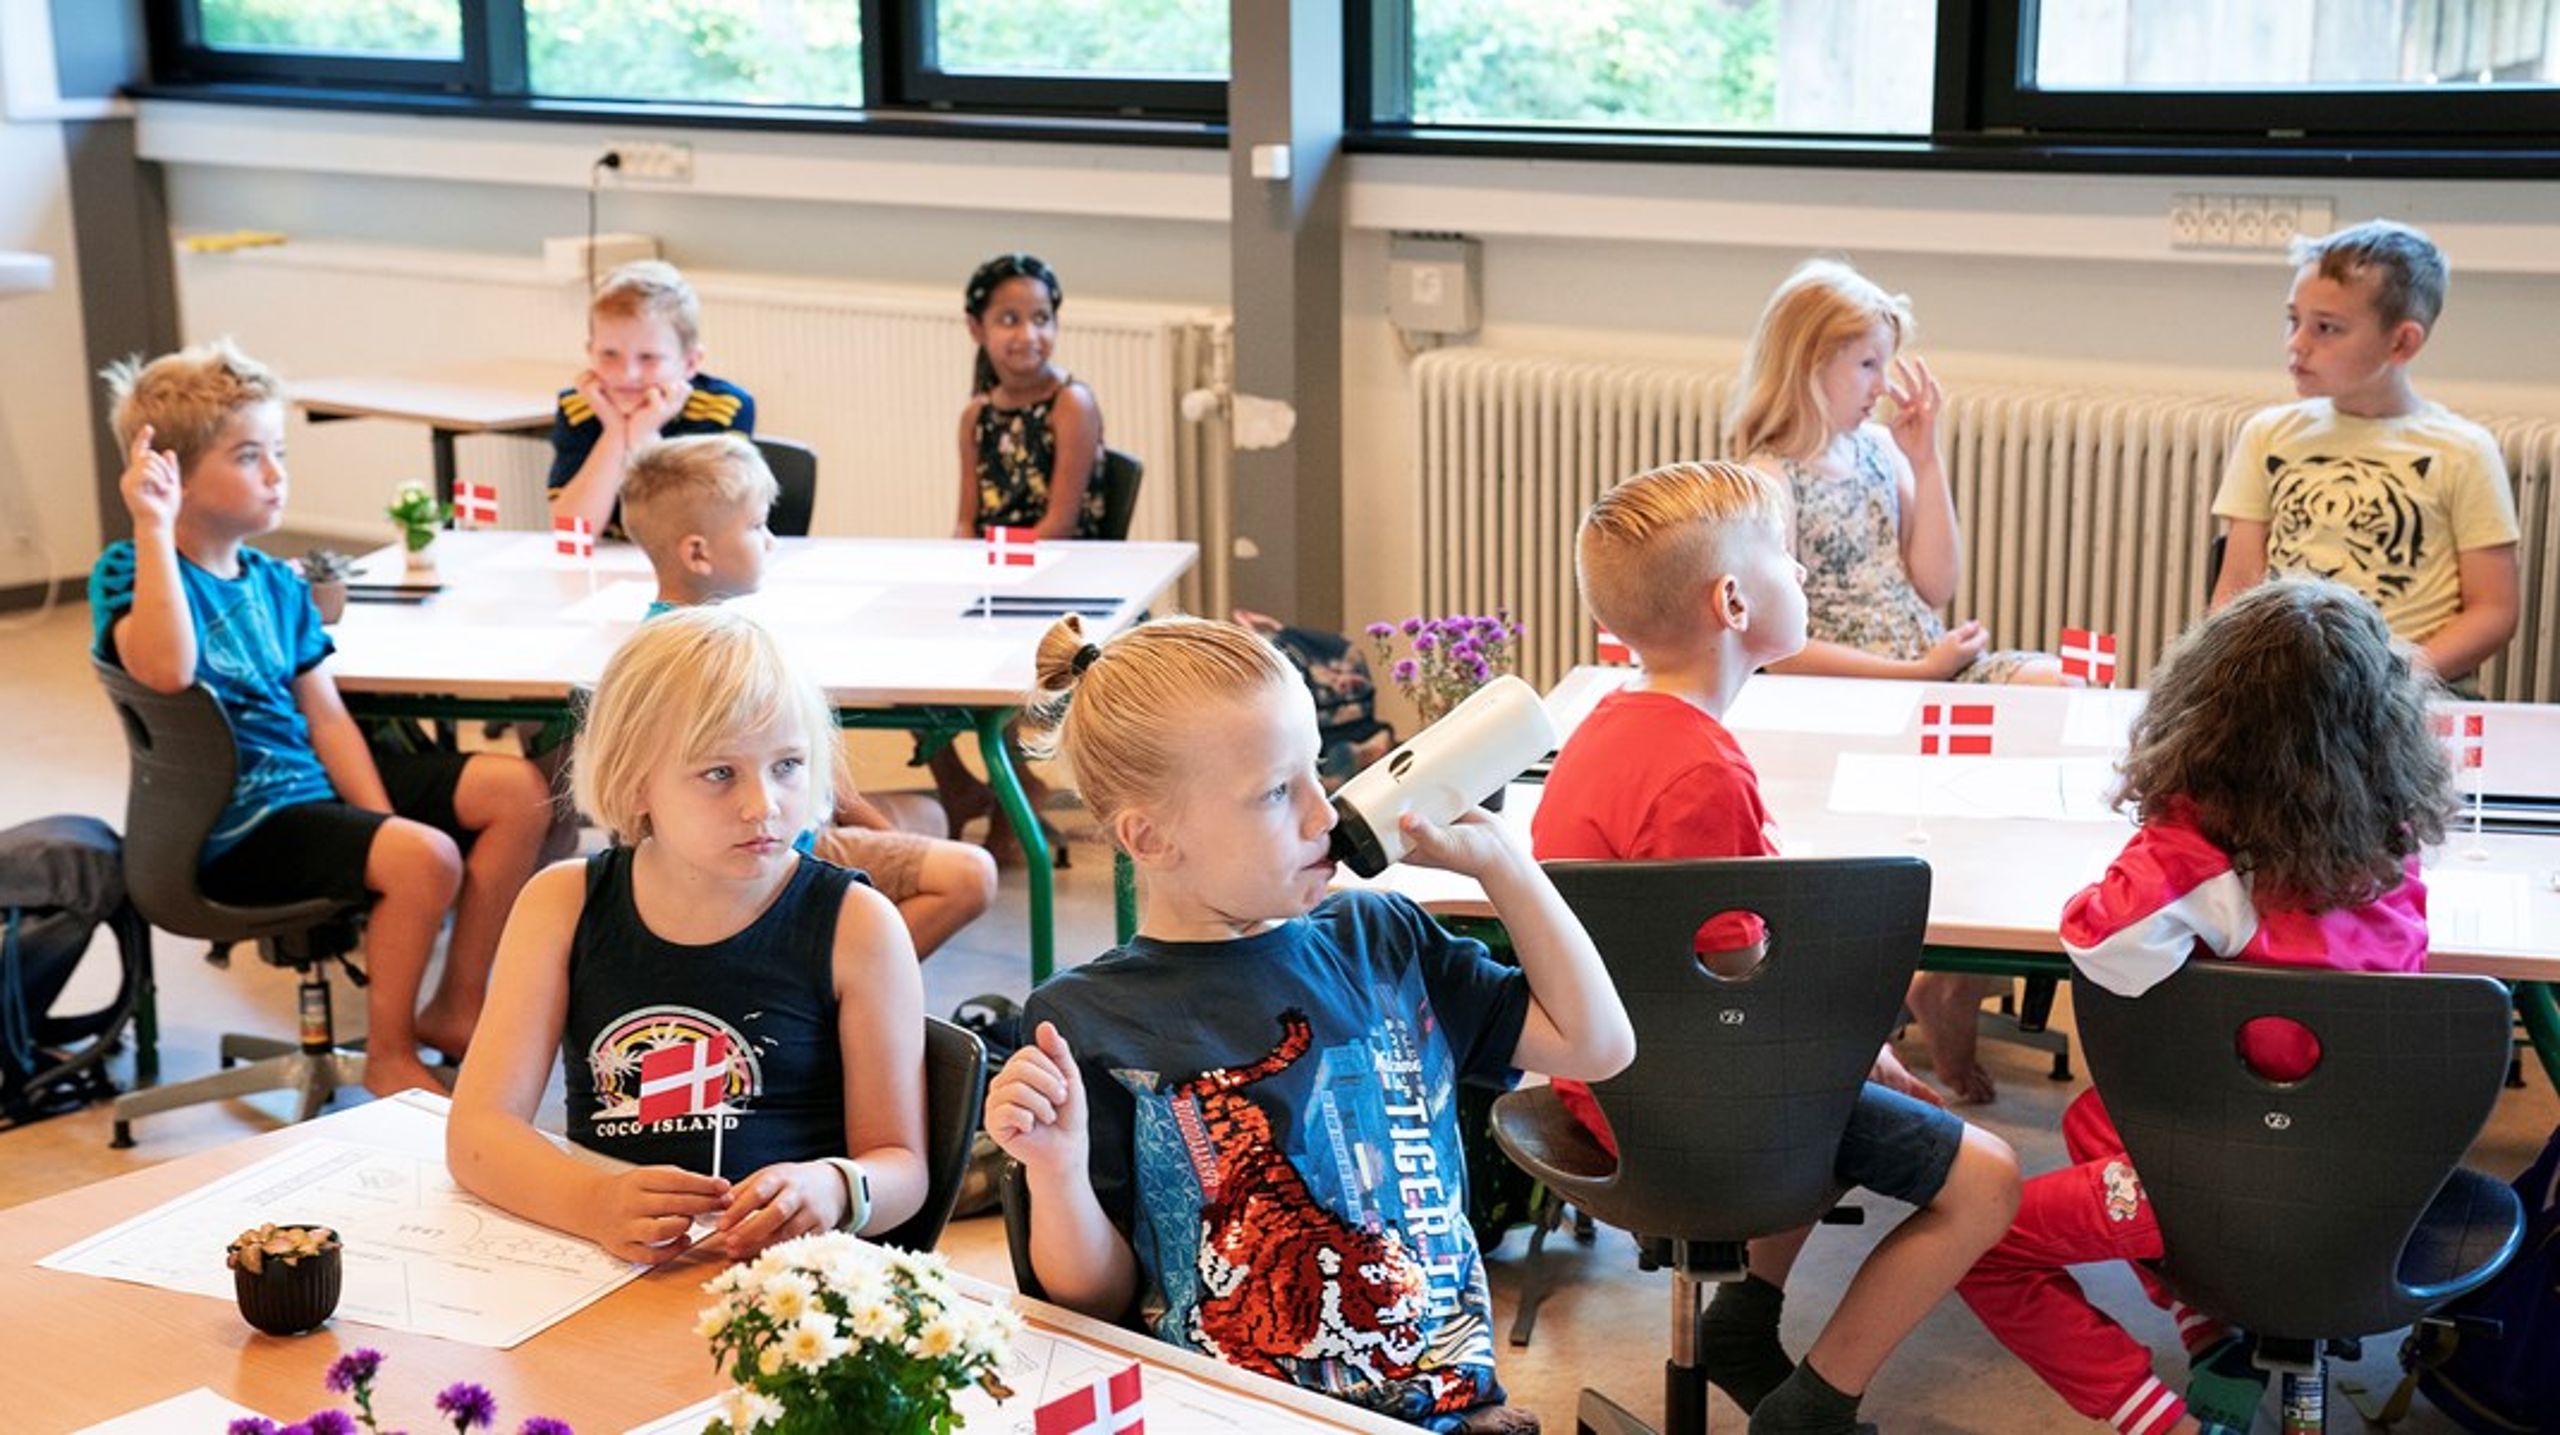 Skolestart på en folkeskole i Tølløse, som ligger i Holbæk, hvor 32 procent af kommunens skolebørn går i fri- eller privatskole. Skoleudvalget har i øvrigt netop besluttet at lukke en folkeskole med kun 17 børn.